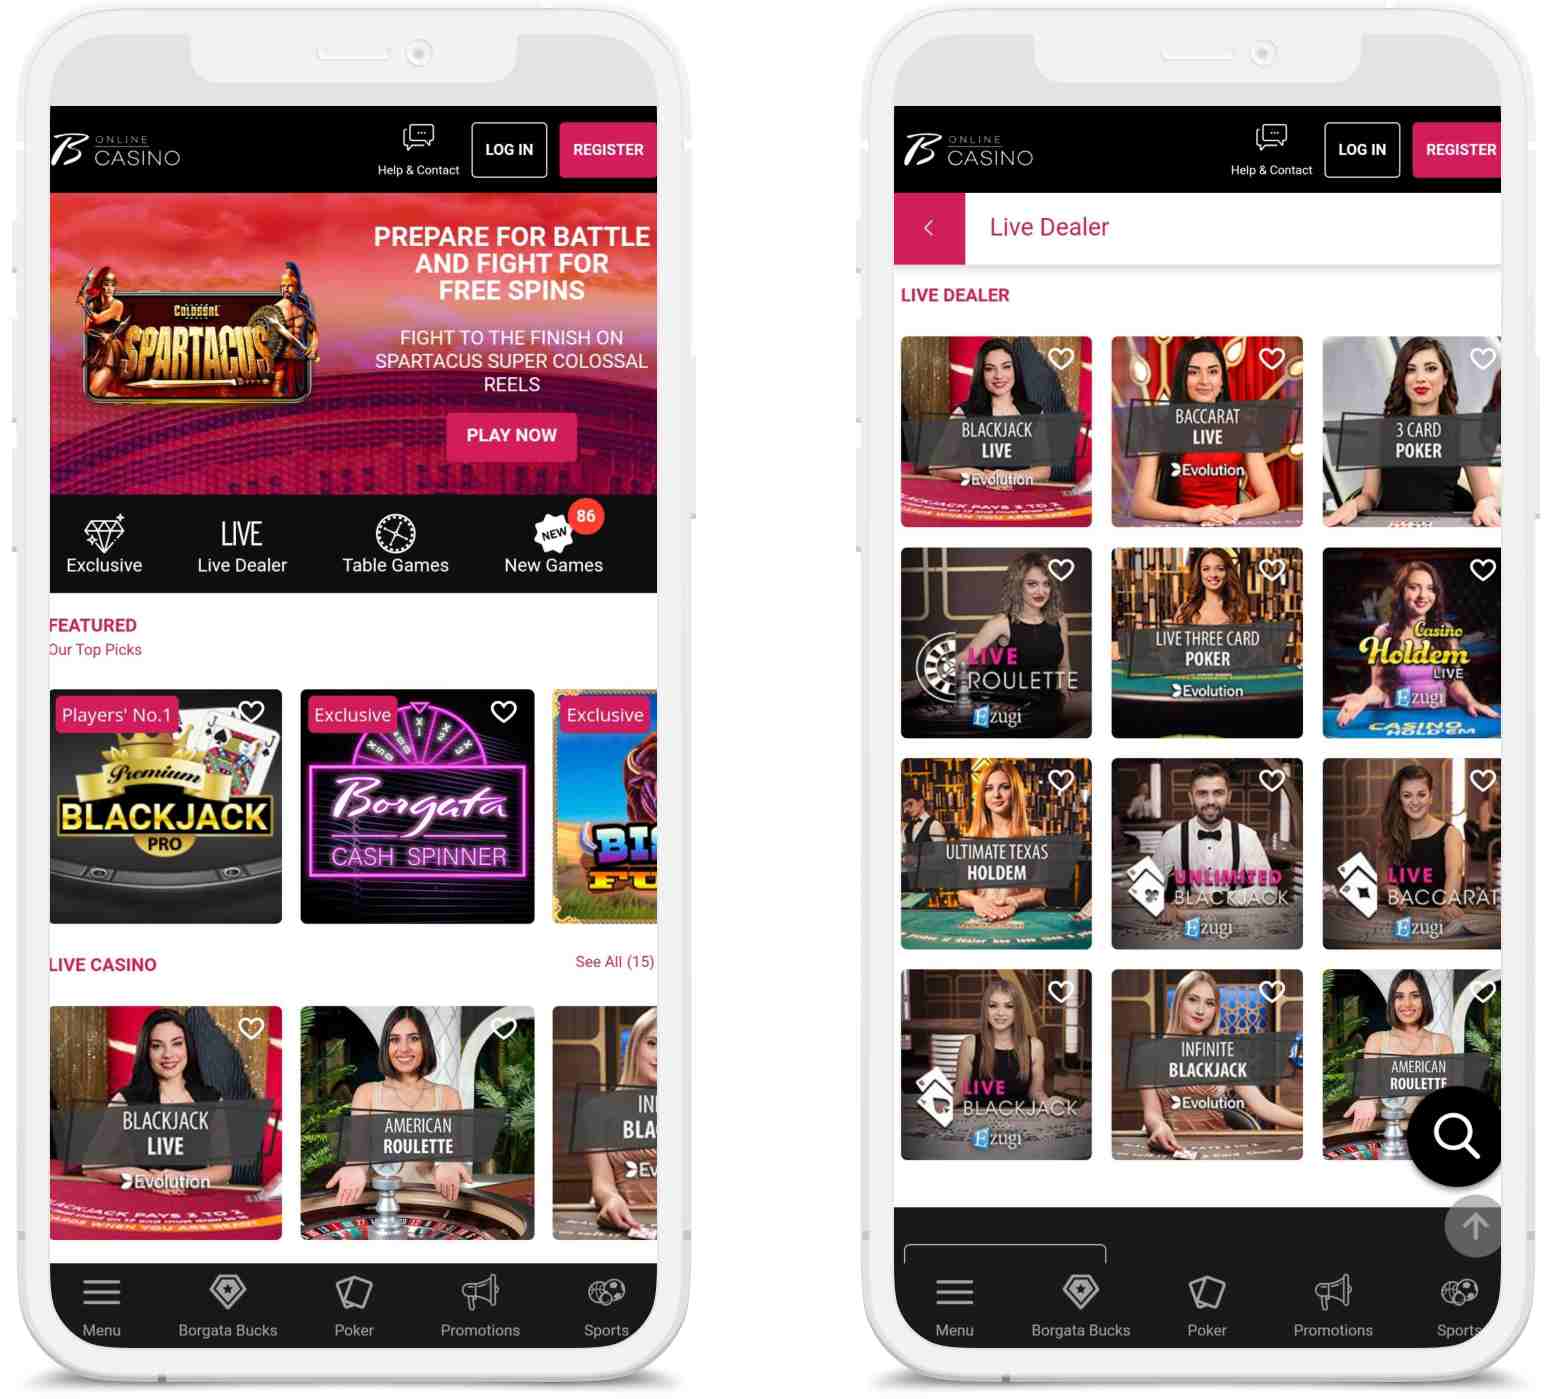 Borgata Casino Mobile Homepage And Live Dealer